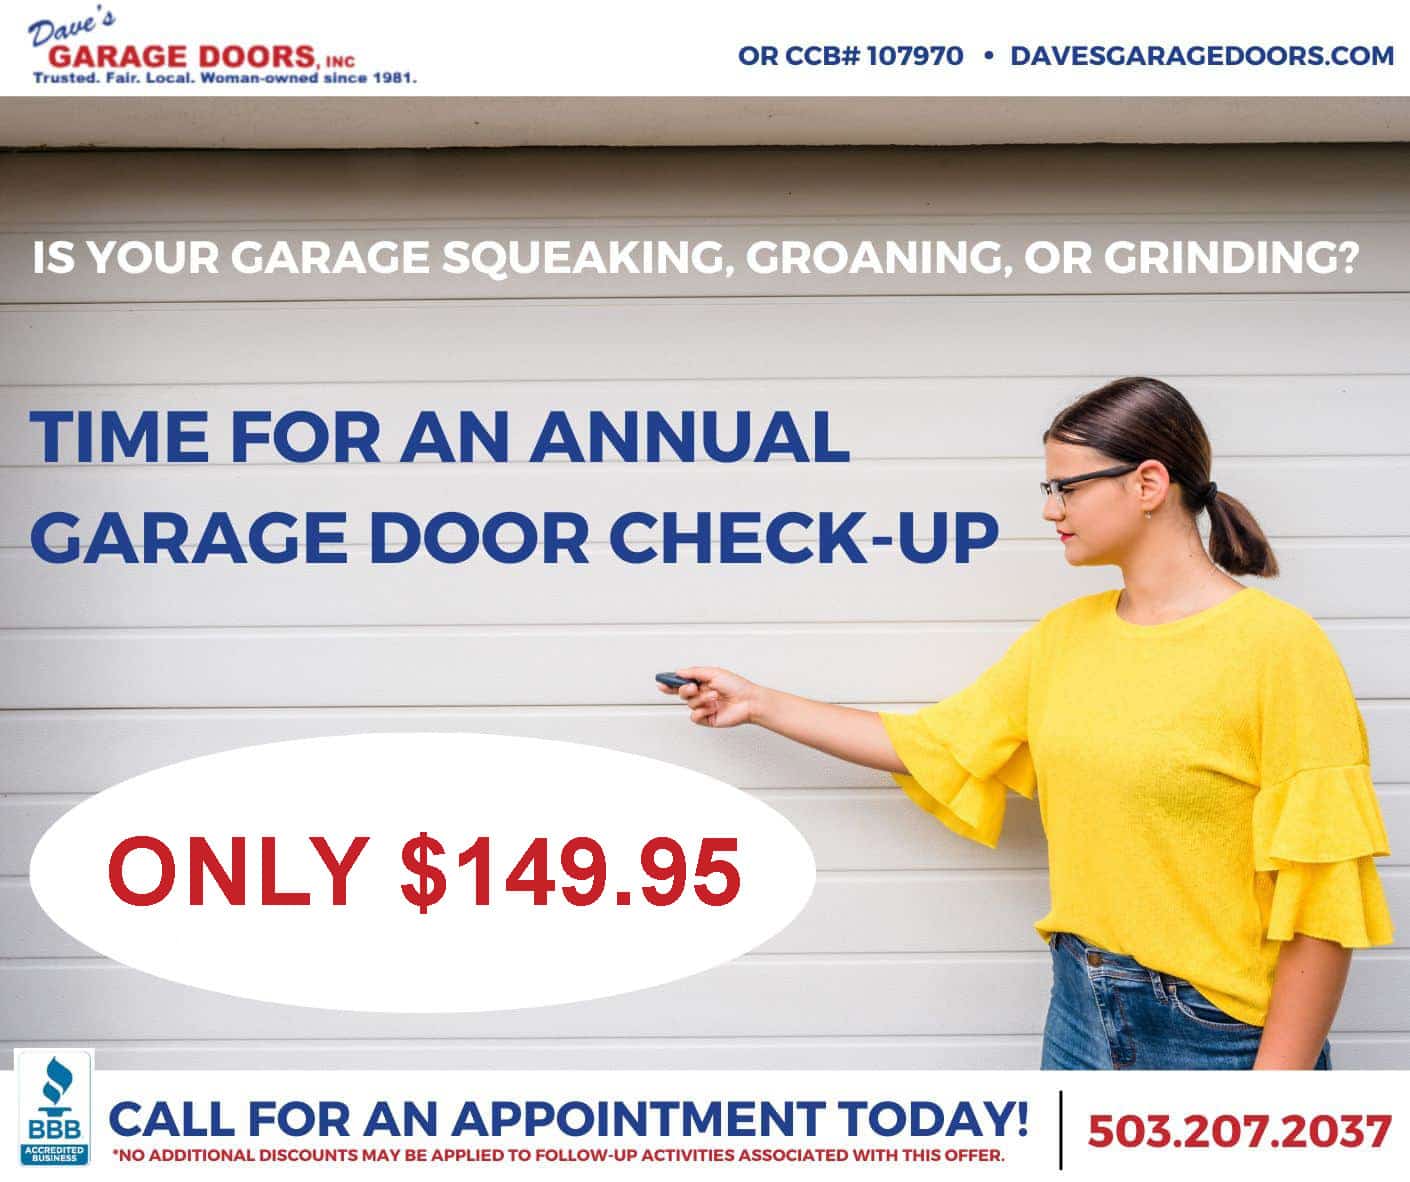 Daves Garage Doors $149 Special